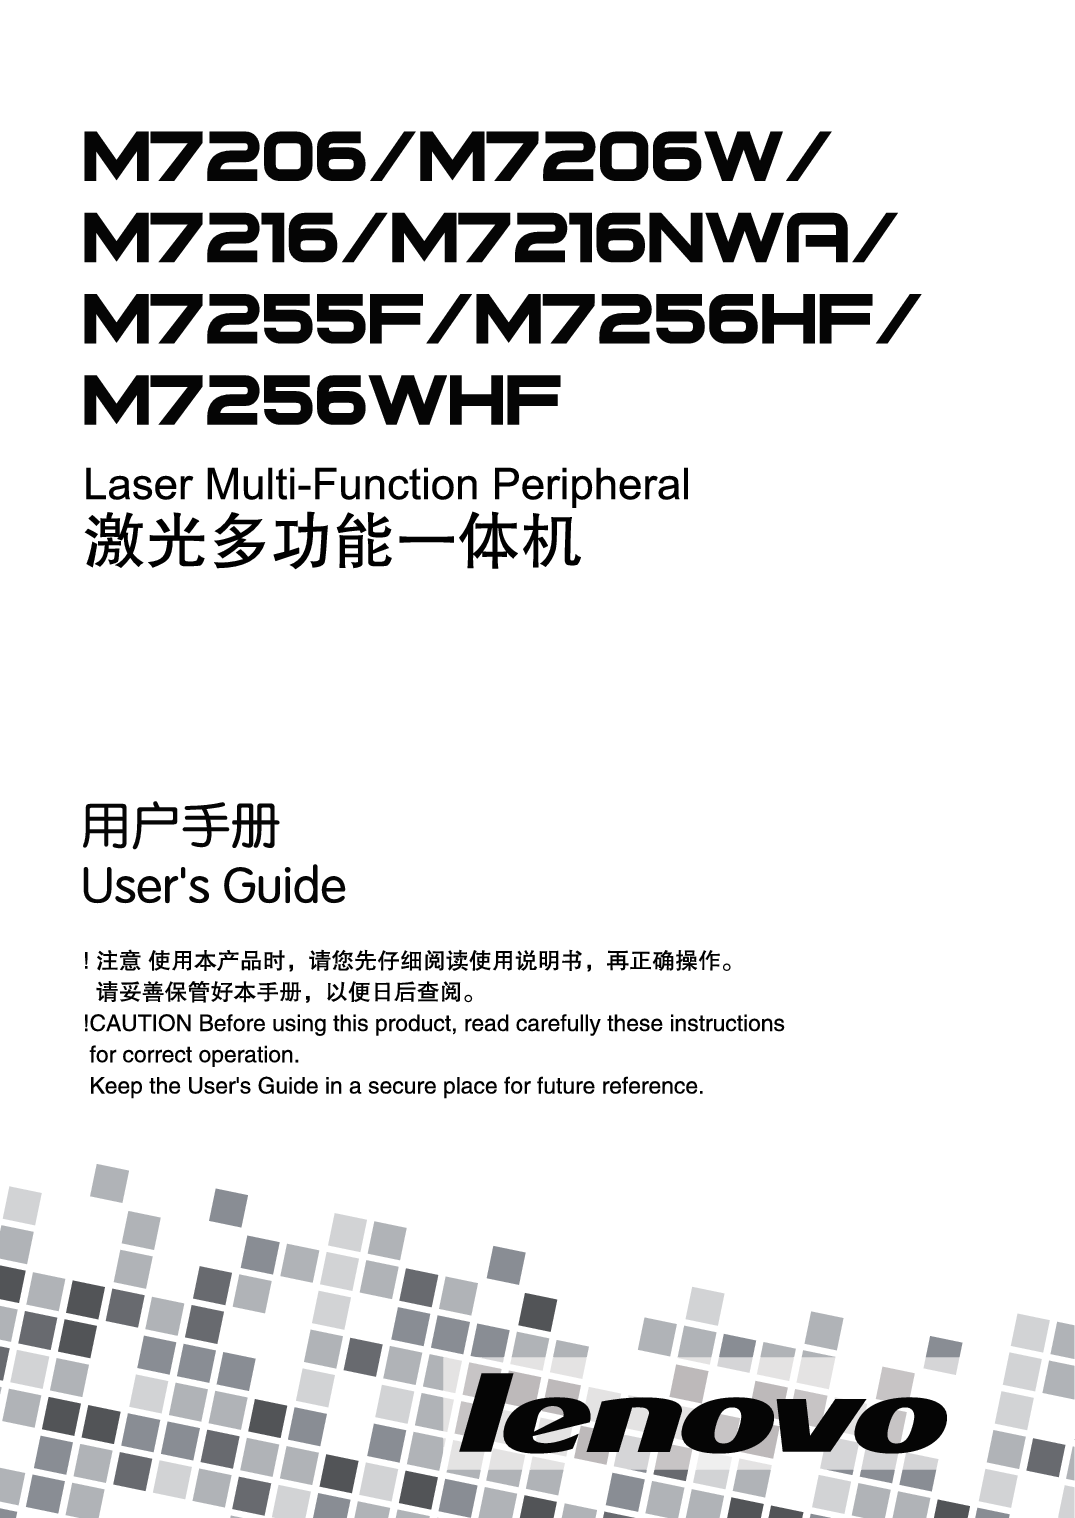 联想 Lenovo M7206, M7216NWA, M7255F 用户手册 封面